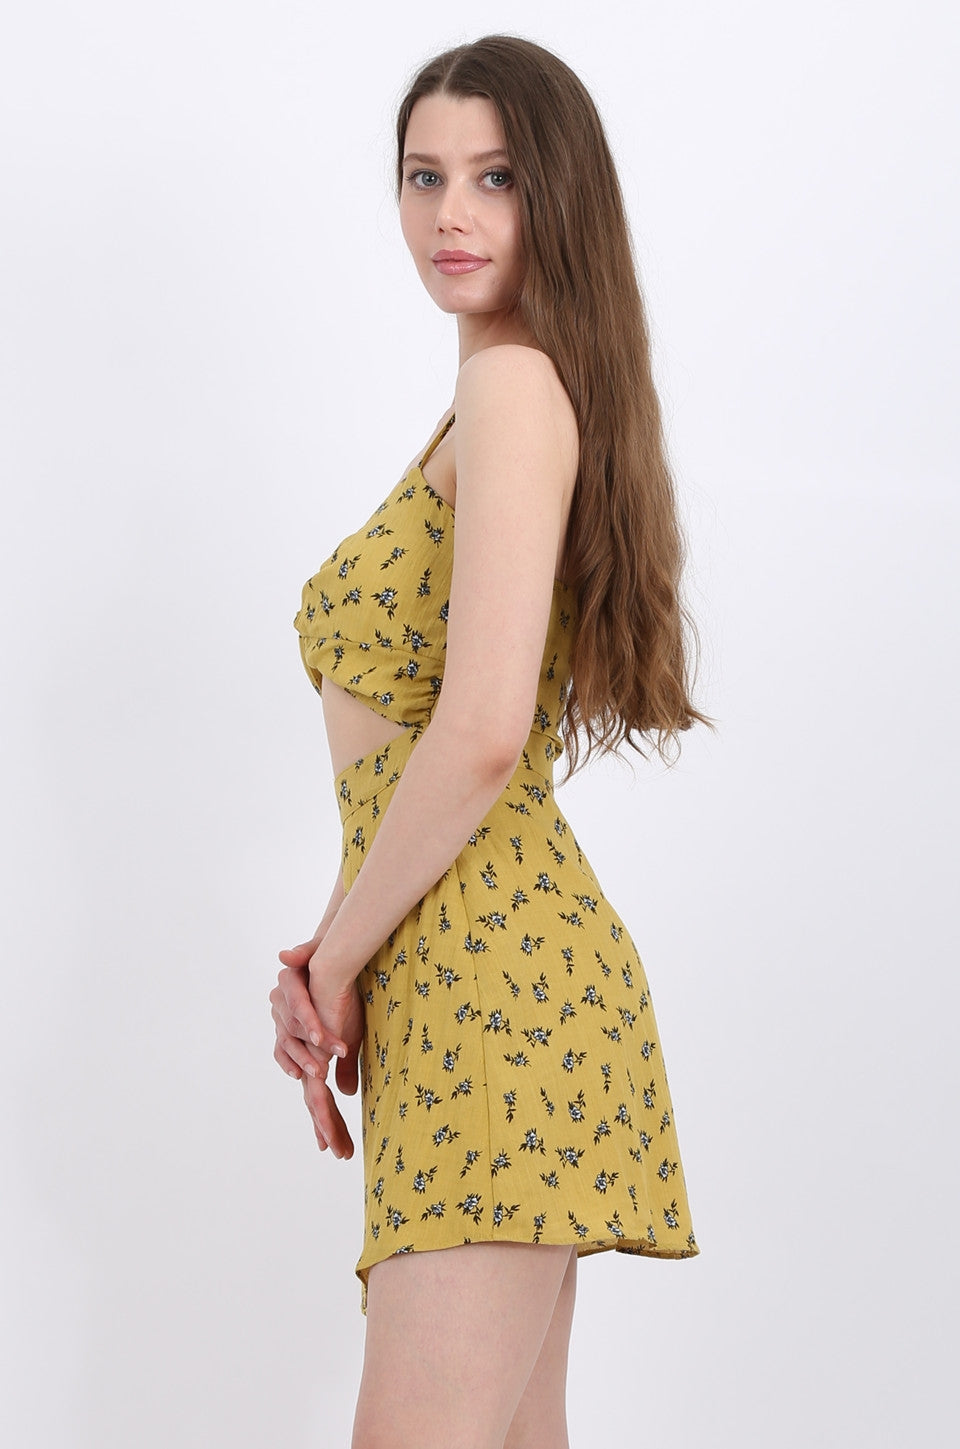 MISS PINKI Iris Mini Dress in Mustard floral